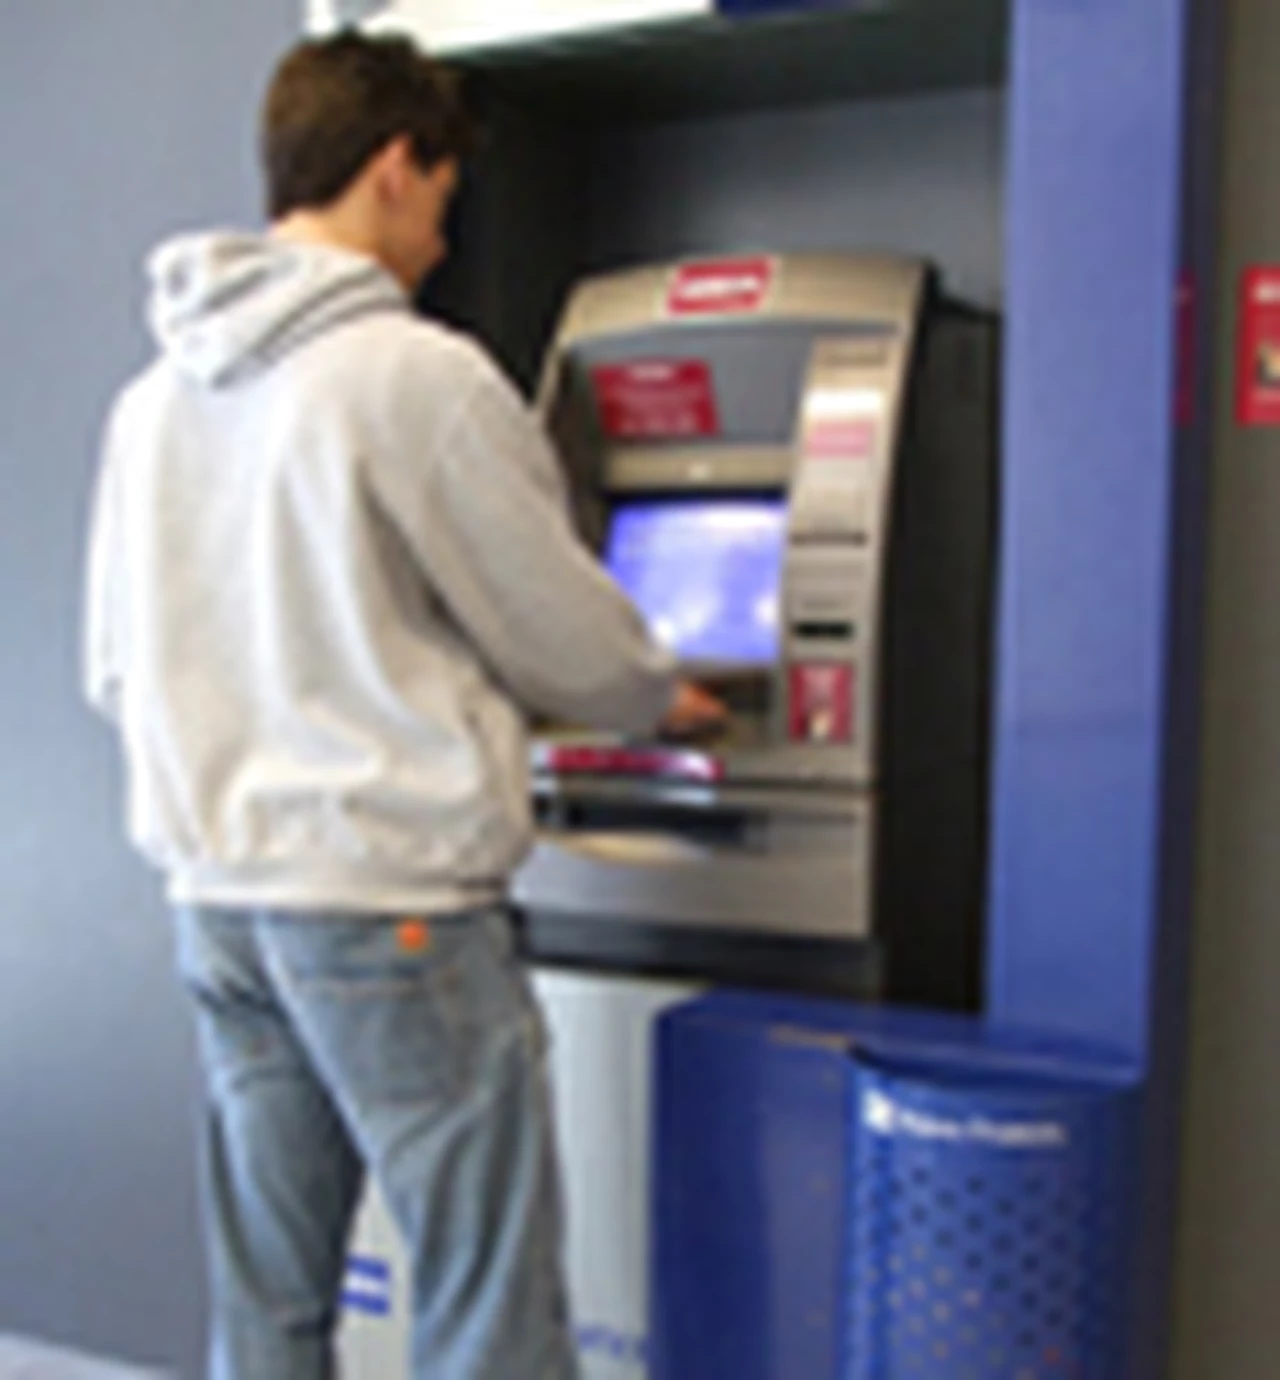 Cómo puede prevenir fraudes y estafas en cajeros automáticos